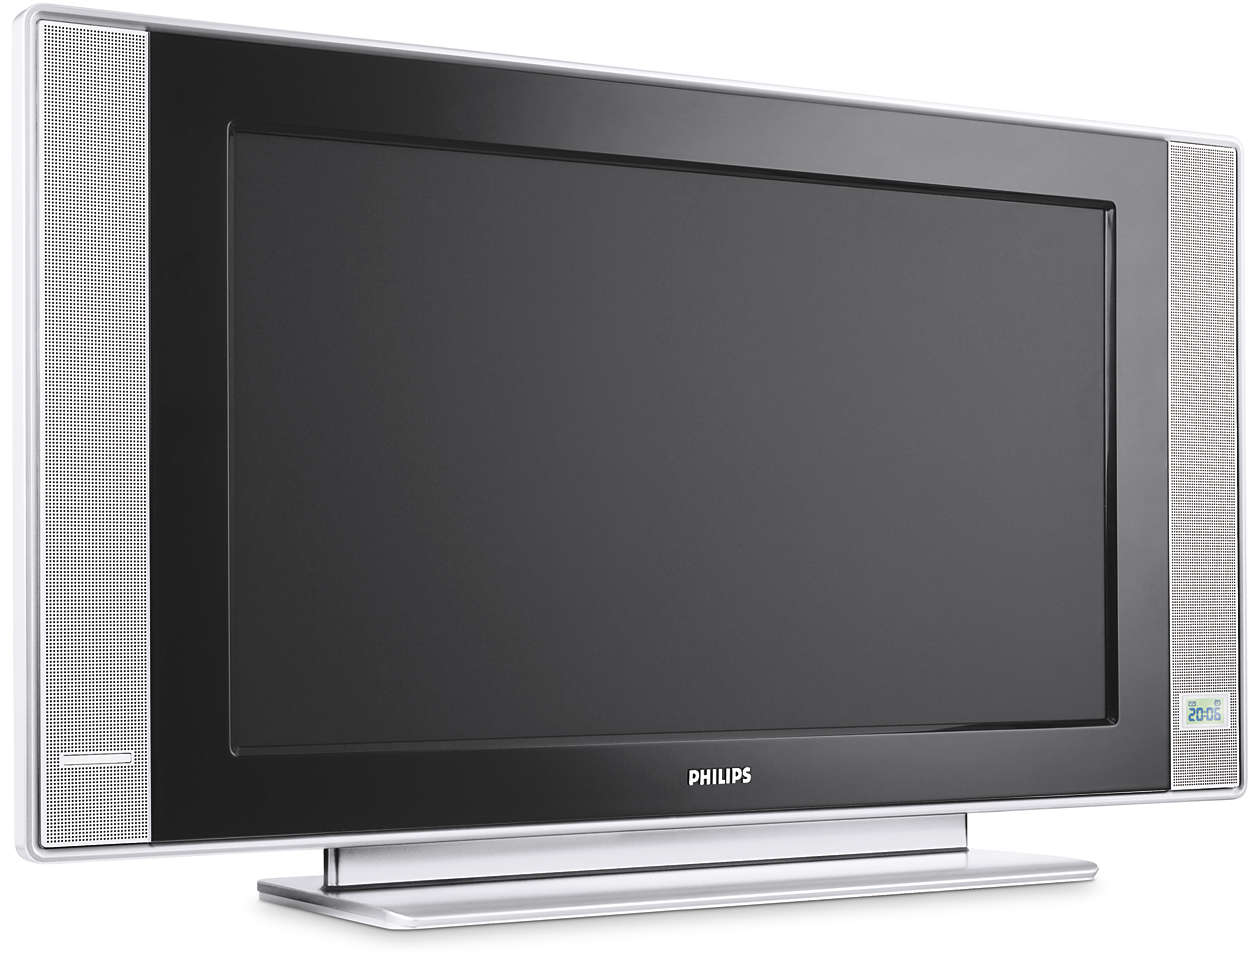 Flat TV cu sistem de integrare